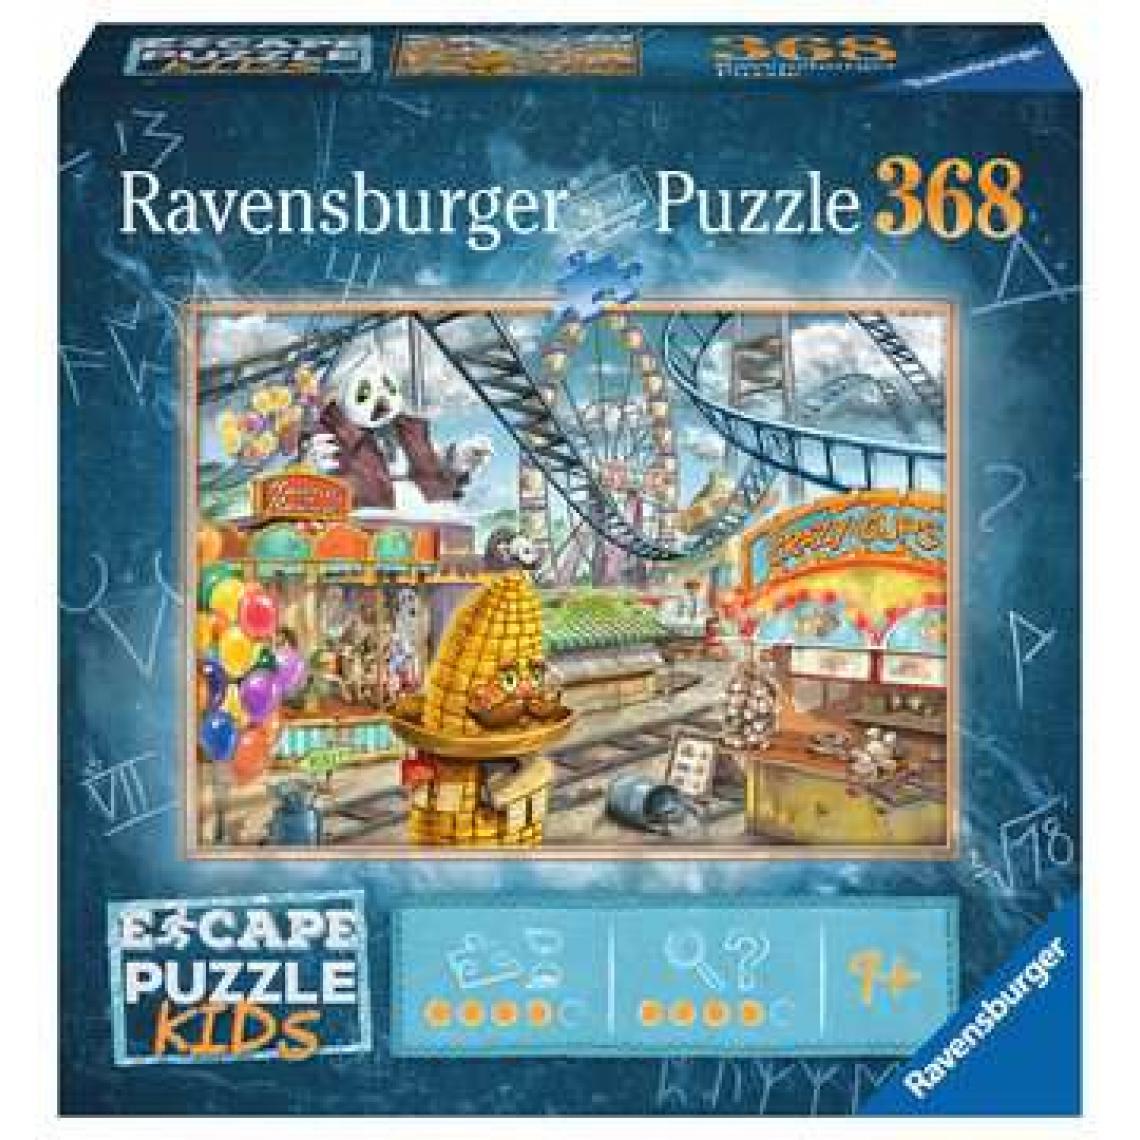 Ravensburger - Escape puzzle Kids - Le parc d'attractions - Ravensburger - Puzzle Escape Game 368 pieces - Des 9 ans - Animaux